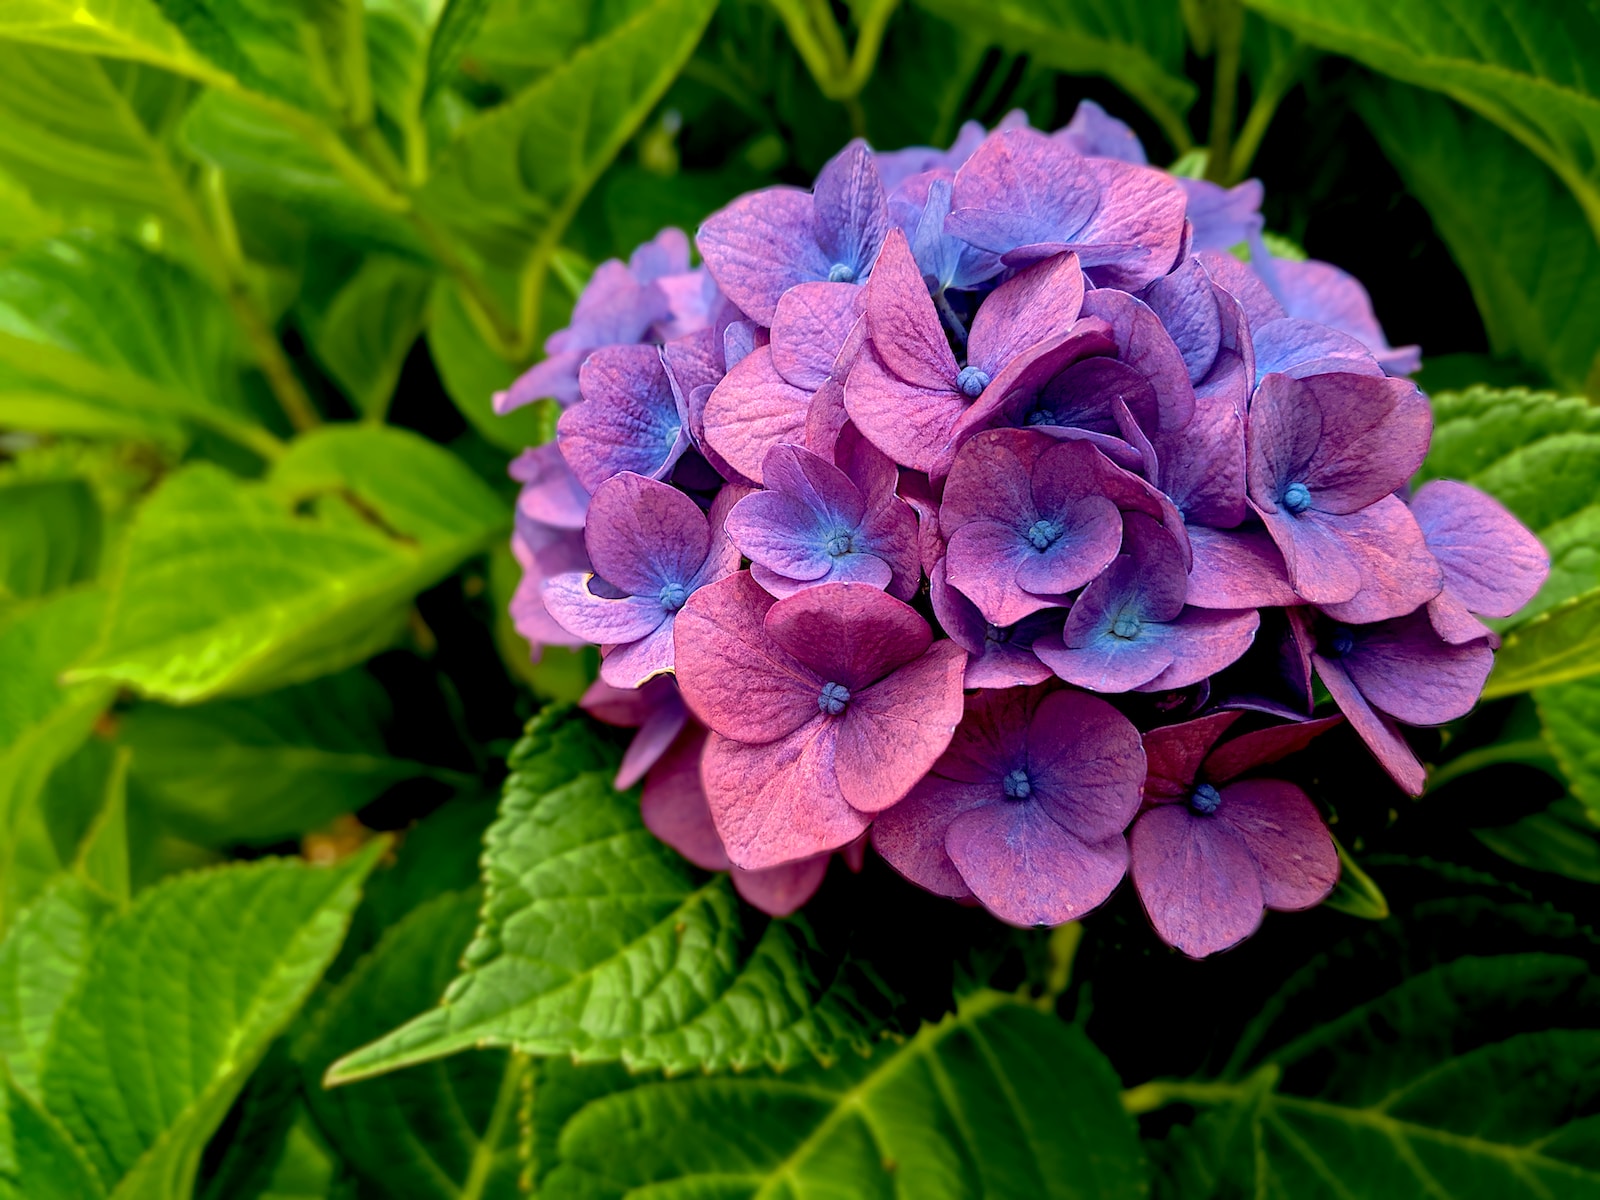 hydrangea purple flower in macro shot